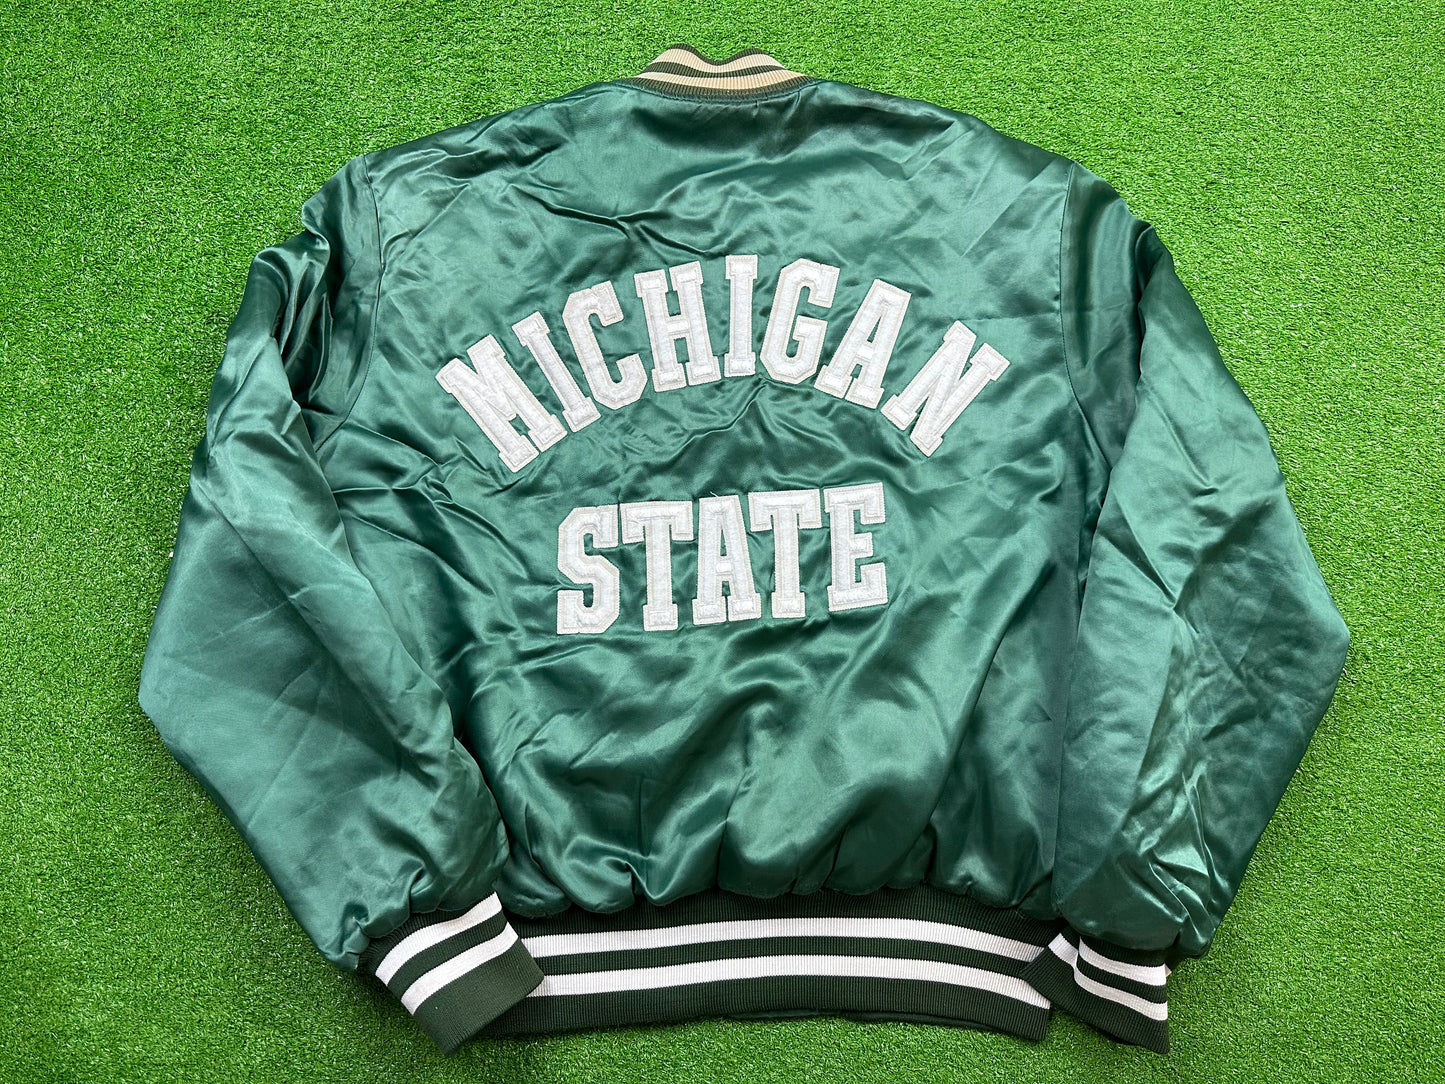 Michigan State Satin Jacket